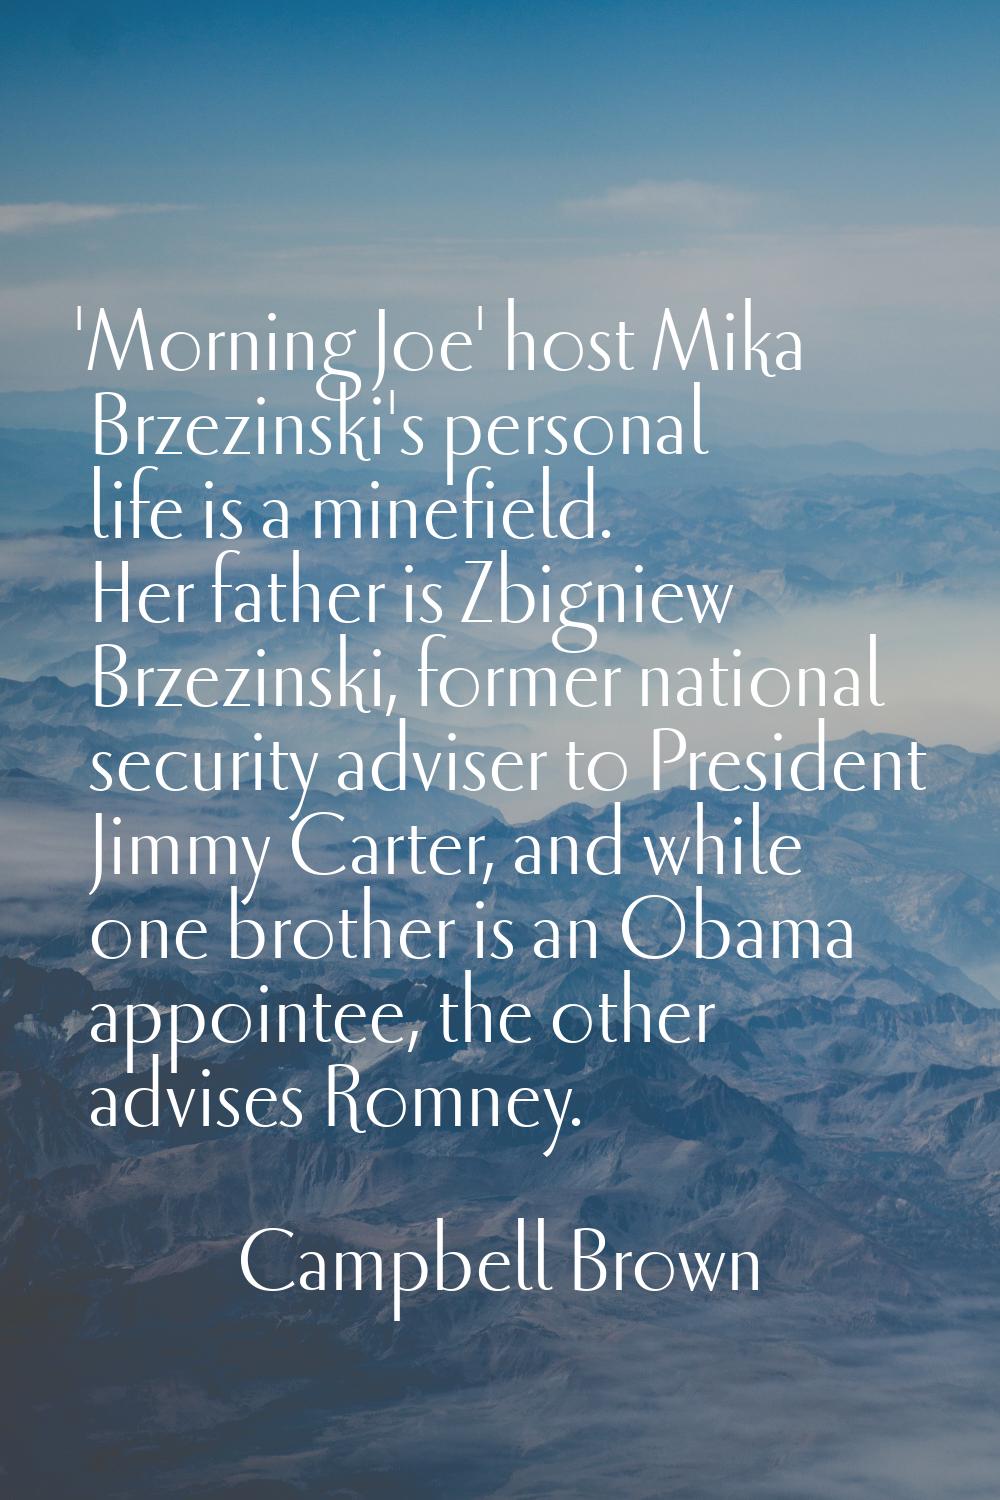 'Morning Joe' host Mika Brzezinski's personal life is a minefield. Her father is Zbigniew Brzezinsk